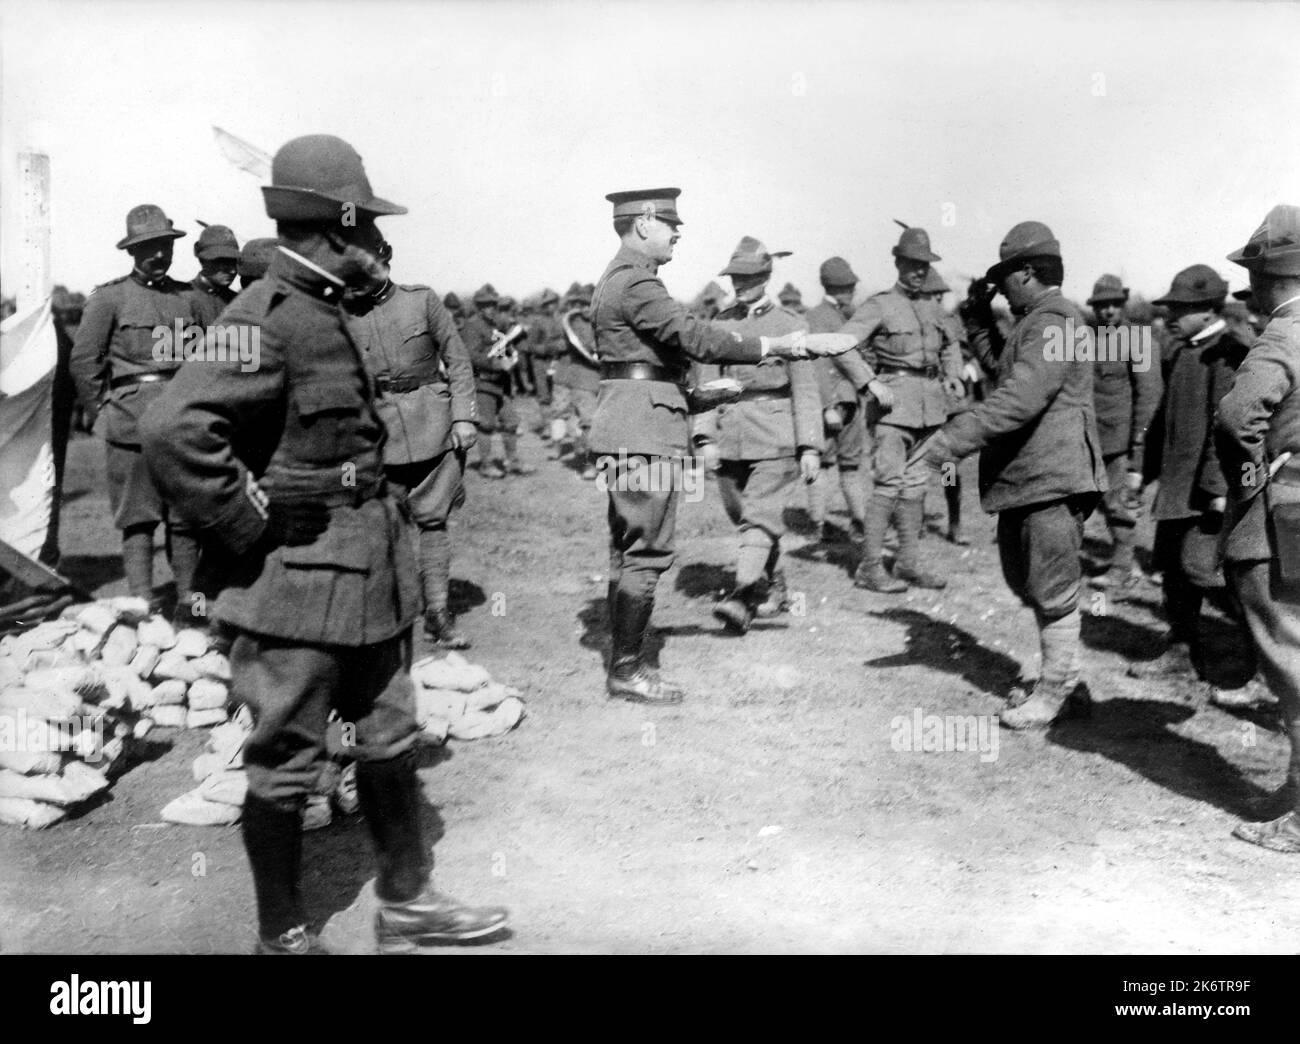 1918 , 30 luglio , ITALIA: Il militare ITALIANO ALPINI si allea in Italia durante la distribuzione di un dono ad un reggimento dell'UFFICIALE AMERICANO DELLA CROCE ROSSA . Fotografo americano sconosciuto . - ALPINO - ALPINE - CROCE ROSSA - PRIMA GUERRA Mondiale - prima Guerra Mondiale - Grande Guerra - prima Guerra Mondiale - al FRONTE - miliari soldati italiani - COLONIALISMO - COLONIALISMO - STORIA - FOTO STORICHE --- Archivio GBB Foto Stock